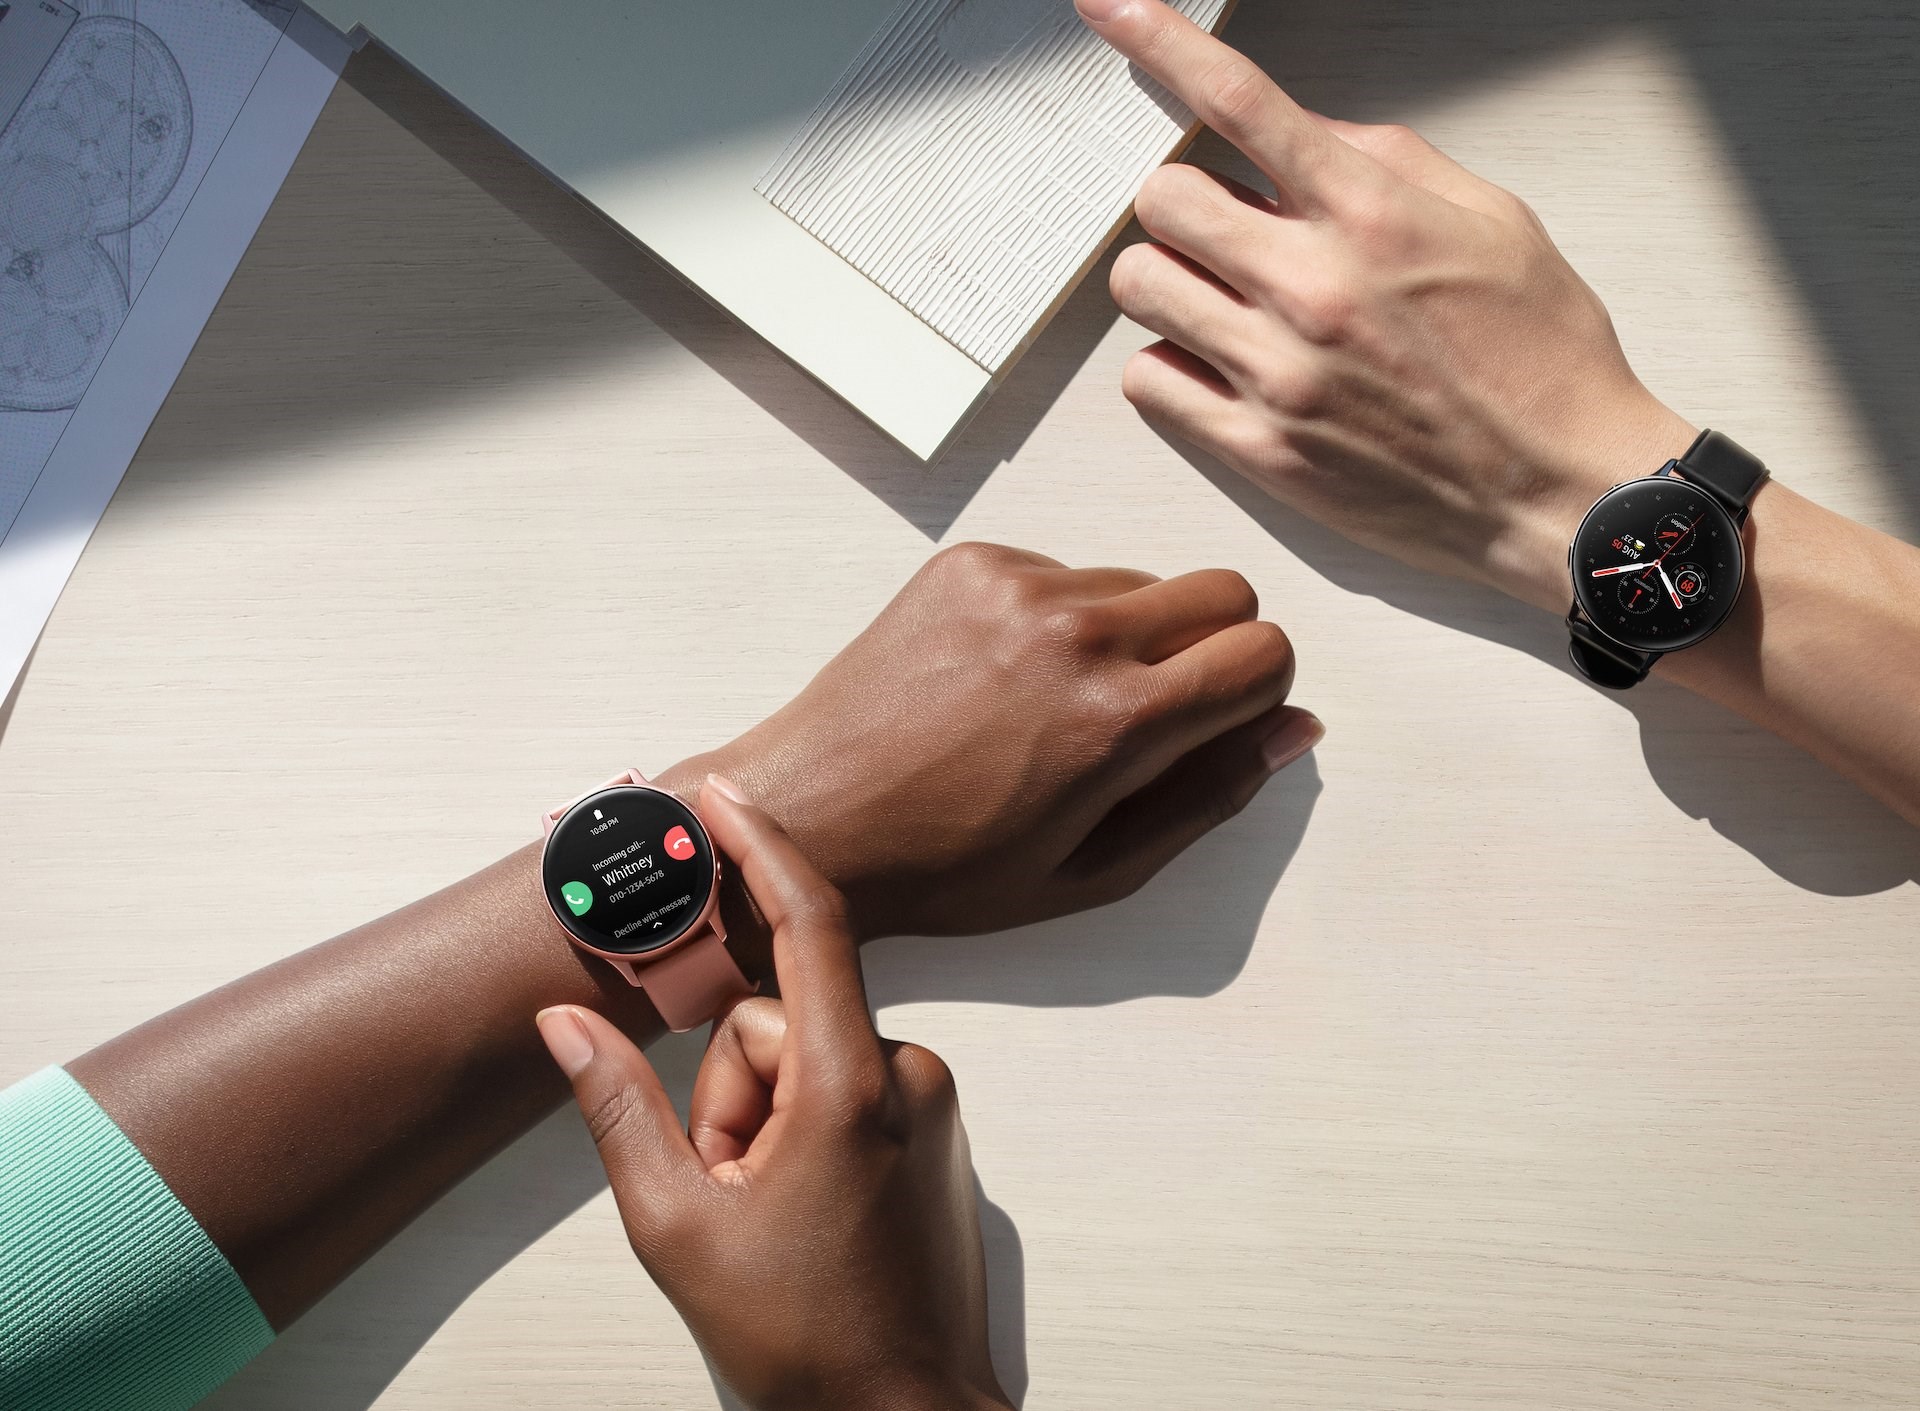 Samsung Galaxy Watch Active 2 için büyük bir yazılım güncellemesi yayınlandı